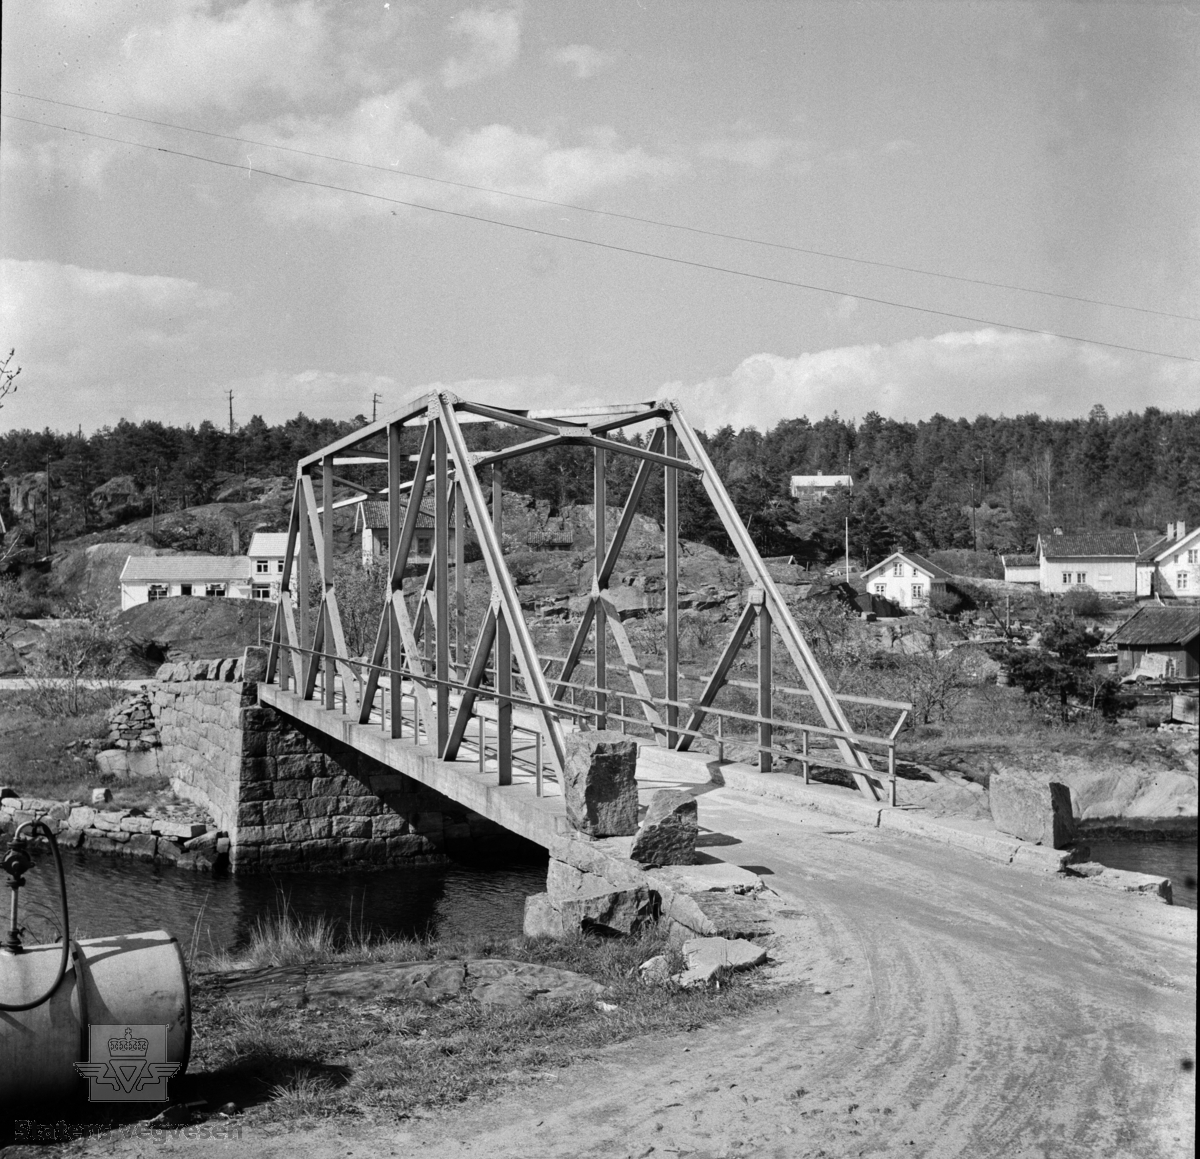 Kilsund bru  Arendal, antakelig fotografert på 1950-tallet.
Stedsnavn: Kilsund